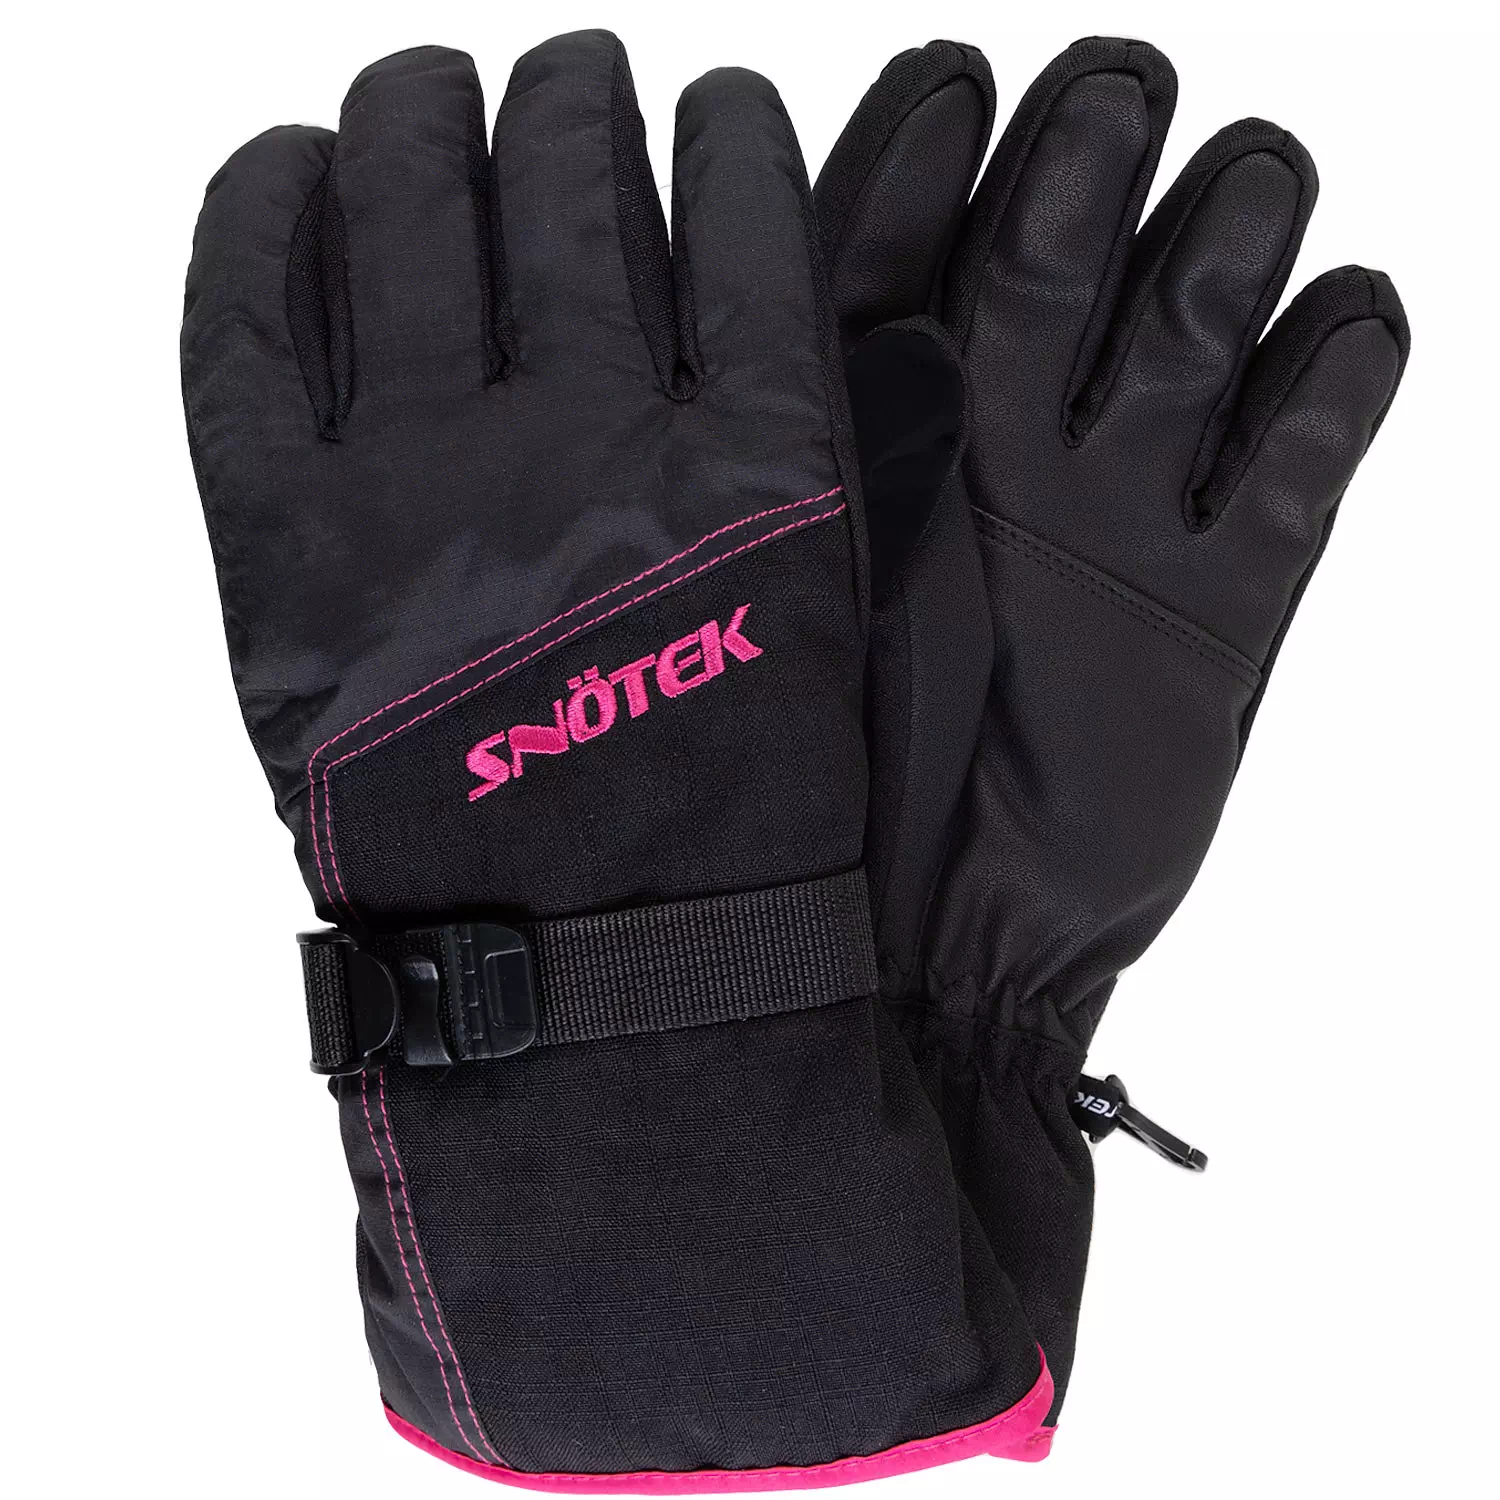 Snötek - Gants de ski d'hiver avec laisse de poignet, moyen (M). Colour:  black. Size: m, Fr